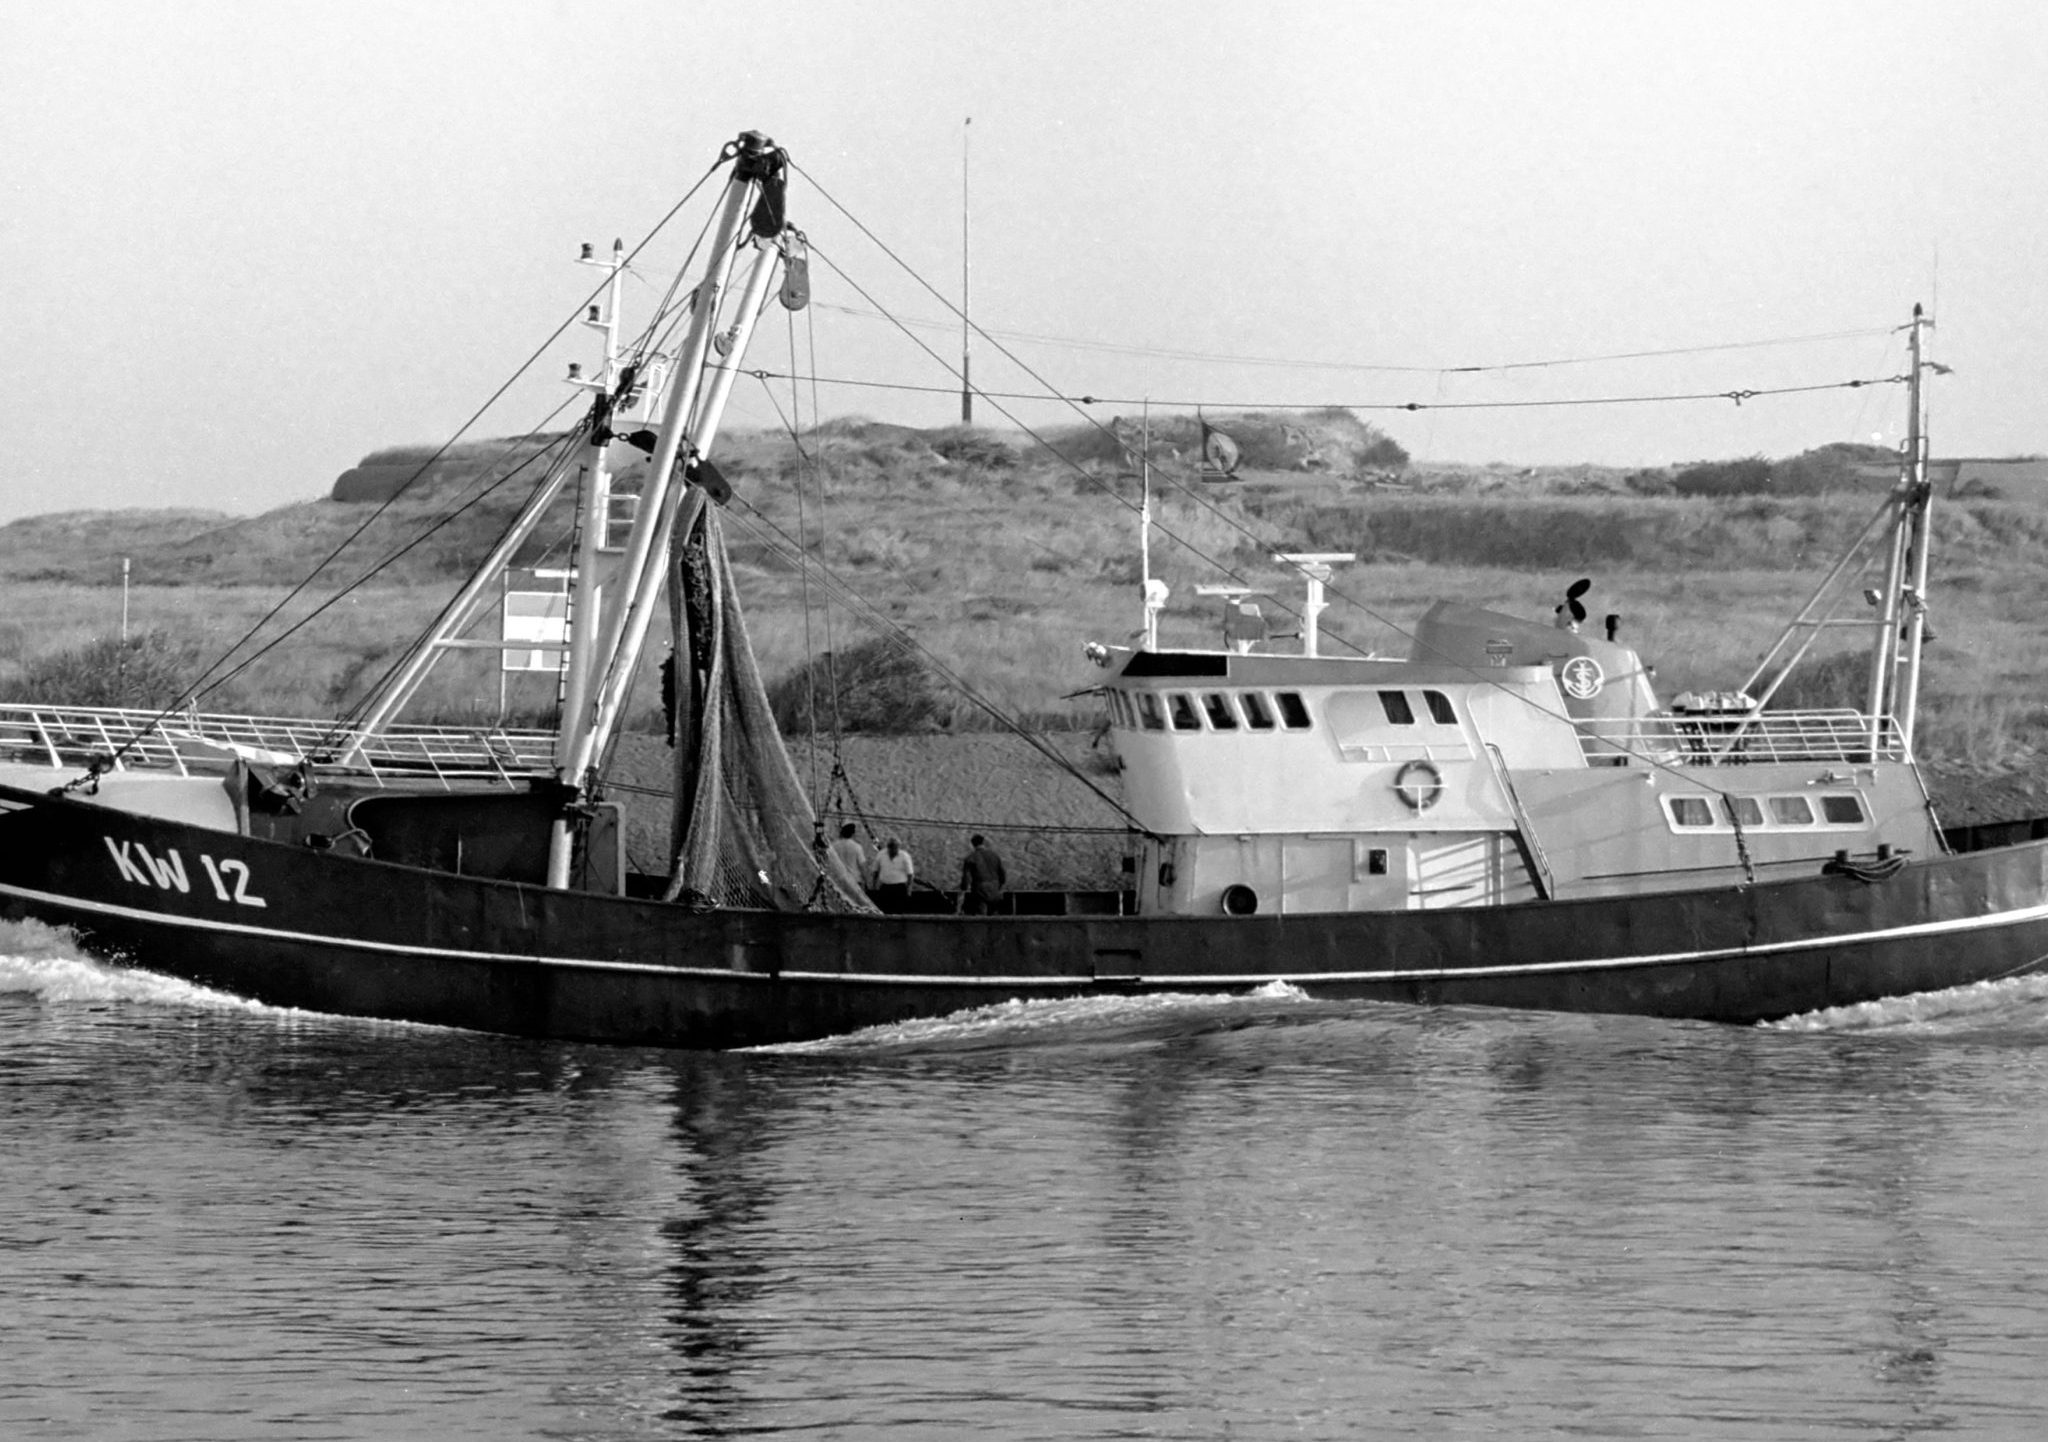 De boomkorkotter KW-12 Deo Juvante in haar nadagen als vissersschip.De boomkorkotter KW-12 Deo Juvante in haar nadagen als vissersschip.